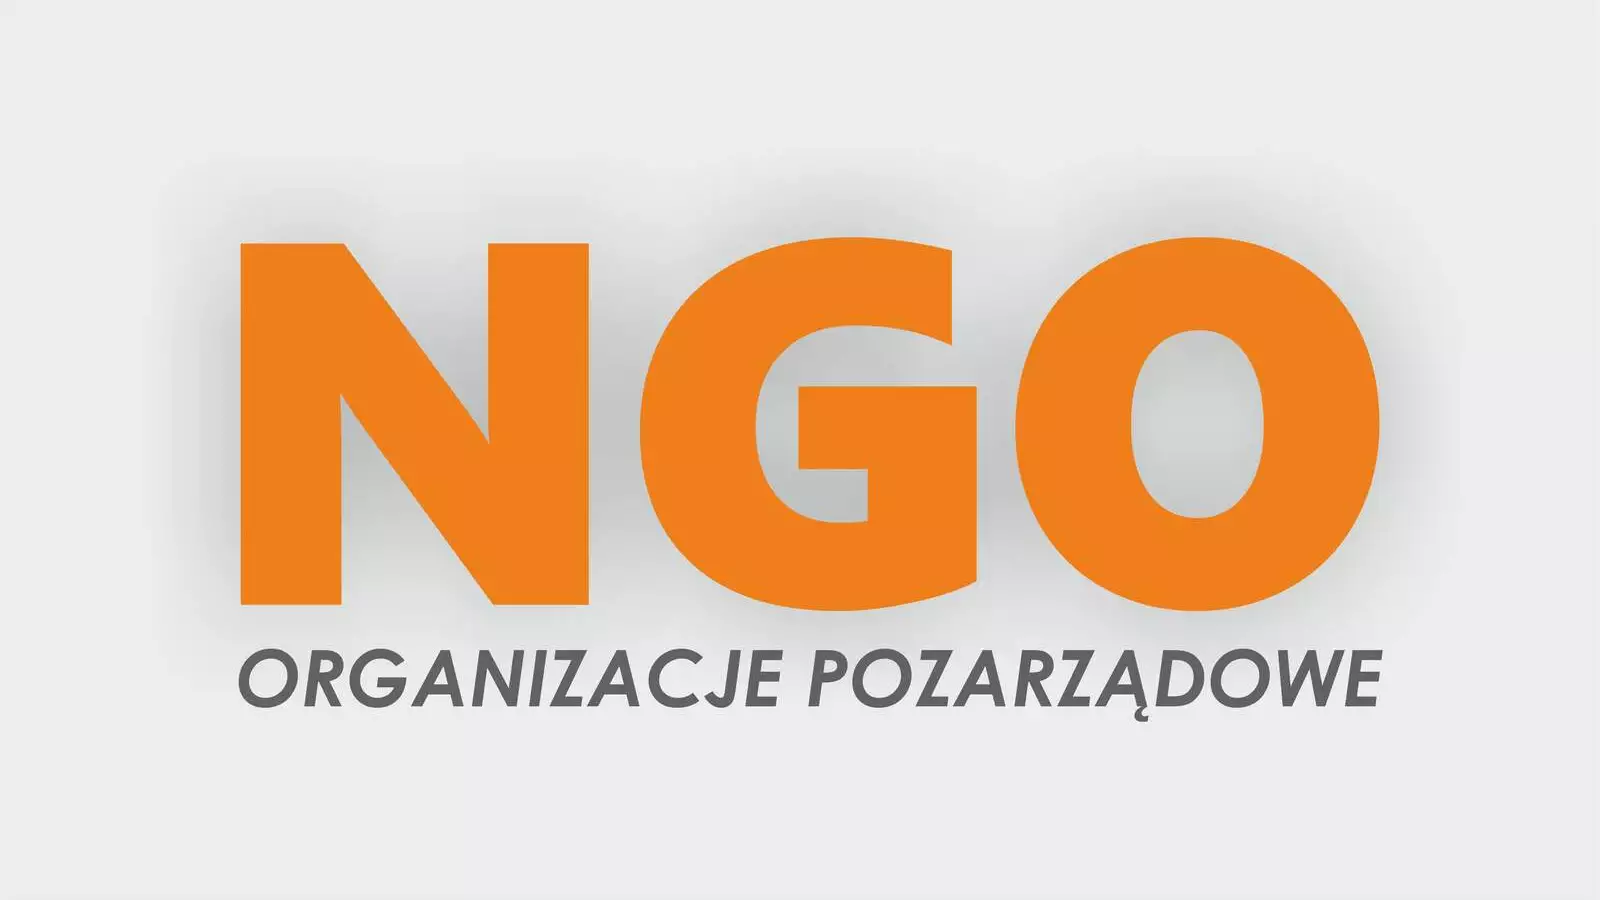 NGO - organizacje pozarządowe